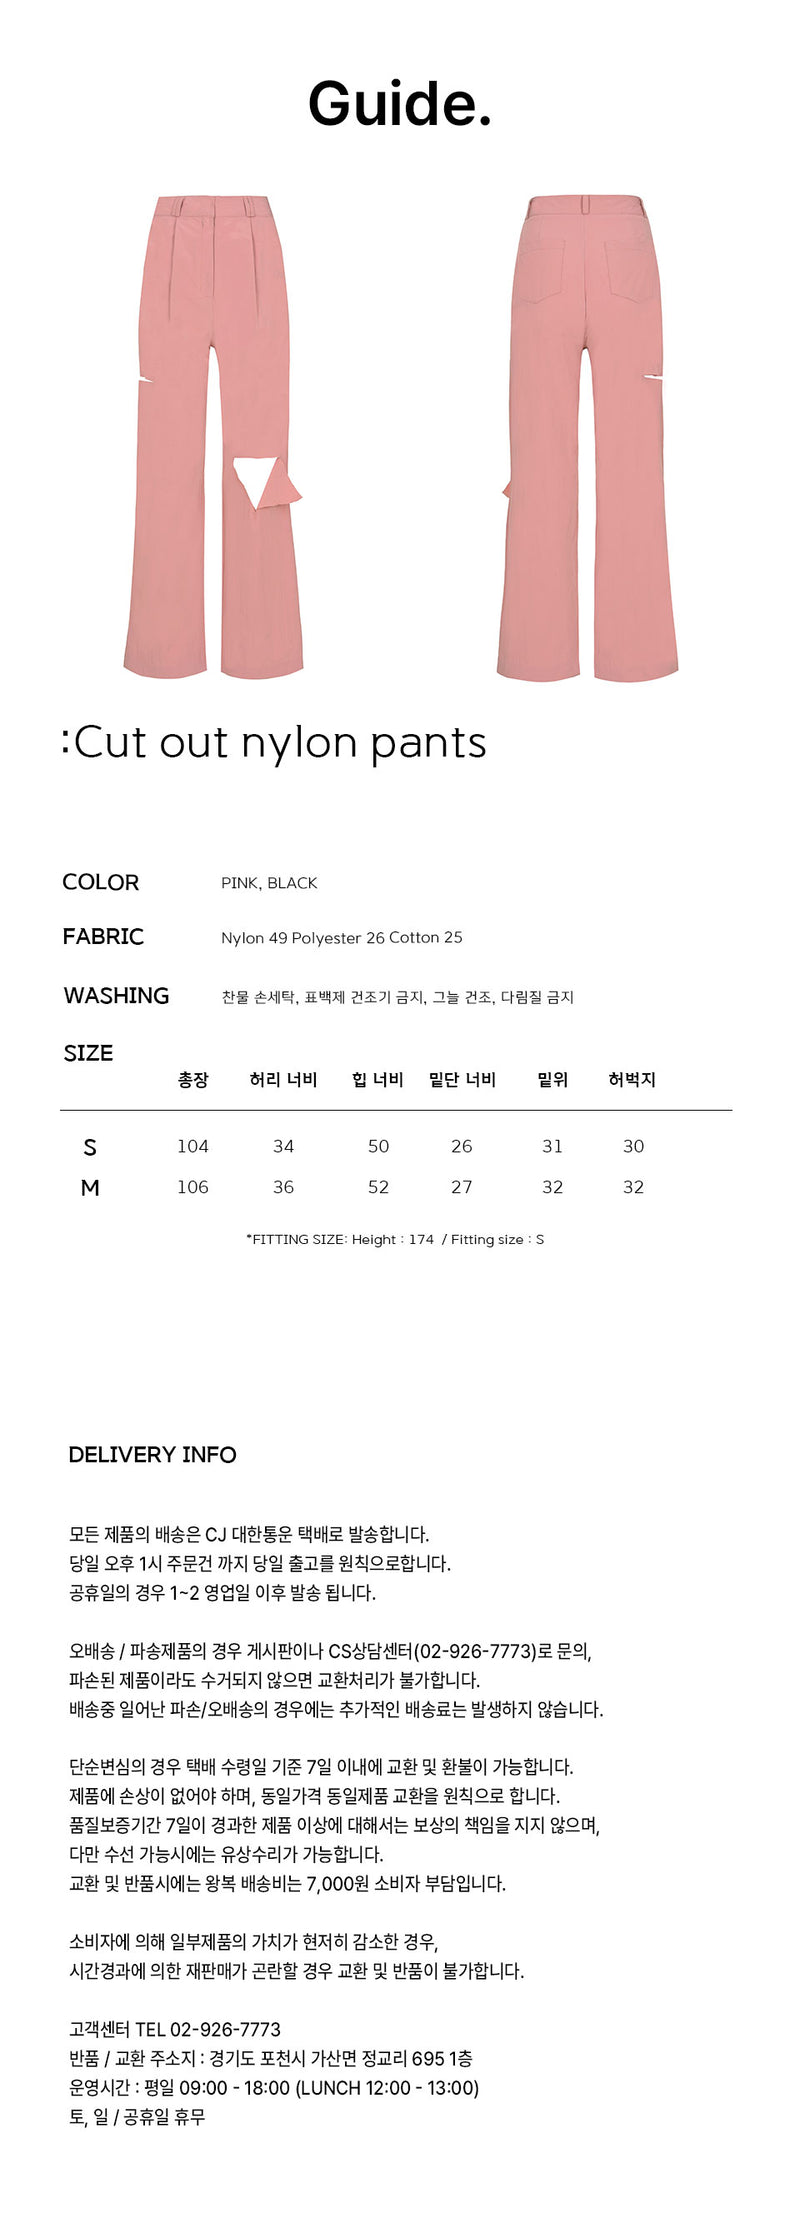 カットアウトナイロンパンツ / Cut out nylon pants